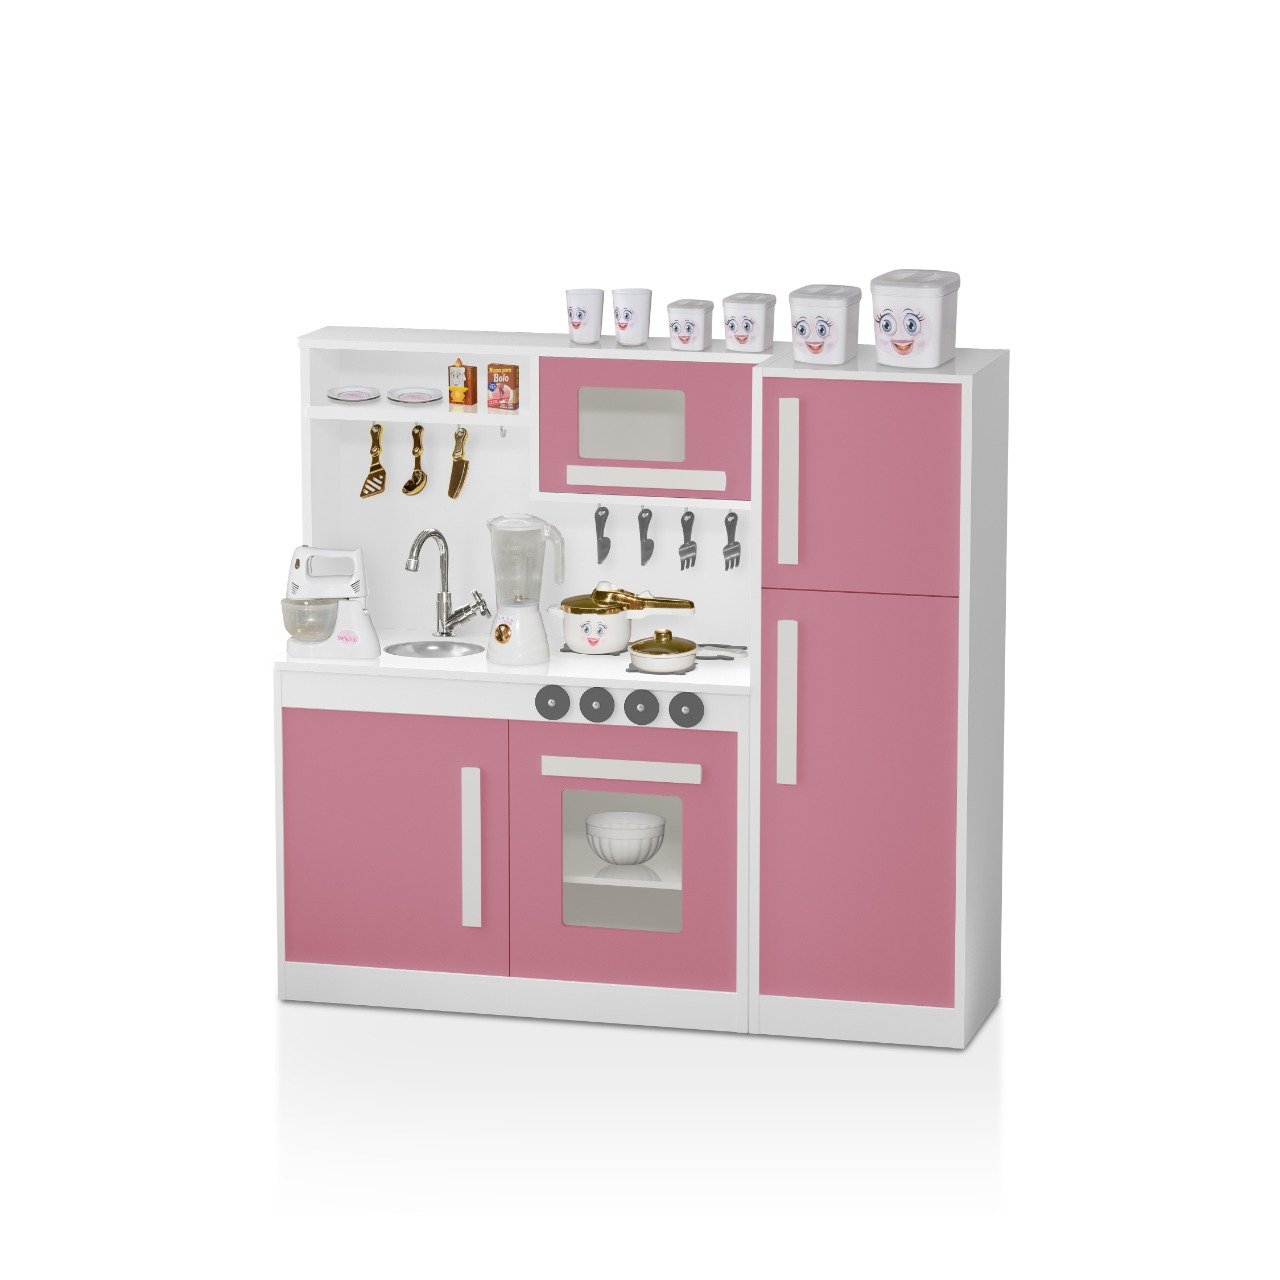 Cozinha Infantil Rosa 100%mdf Completa + Geladeira Perfeita - 1